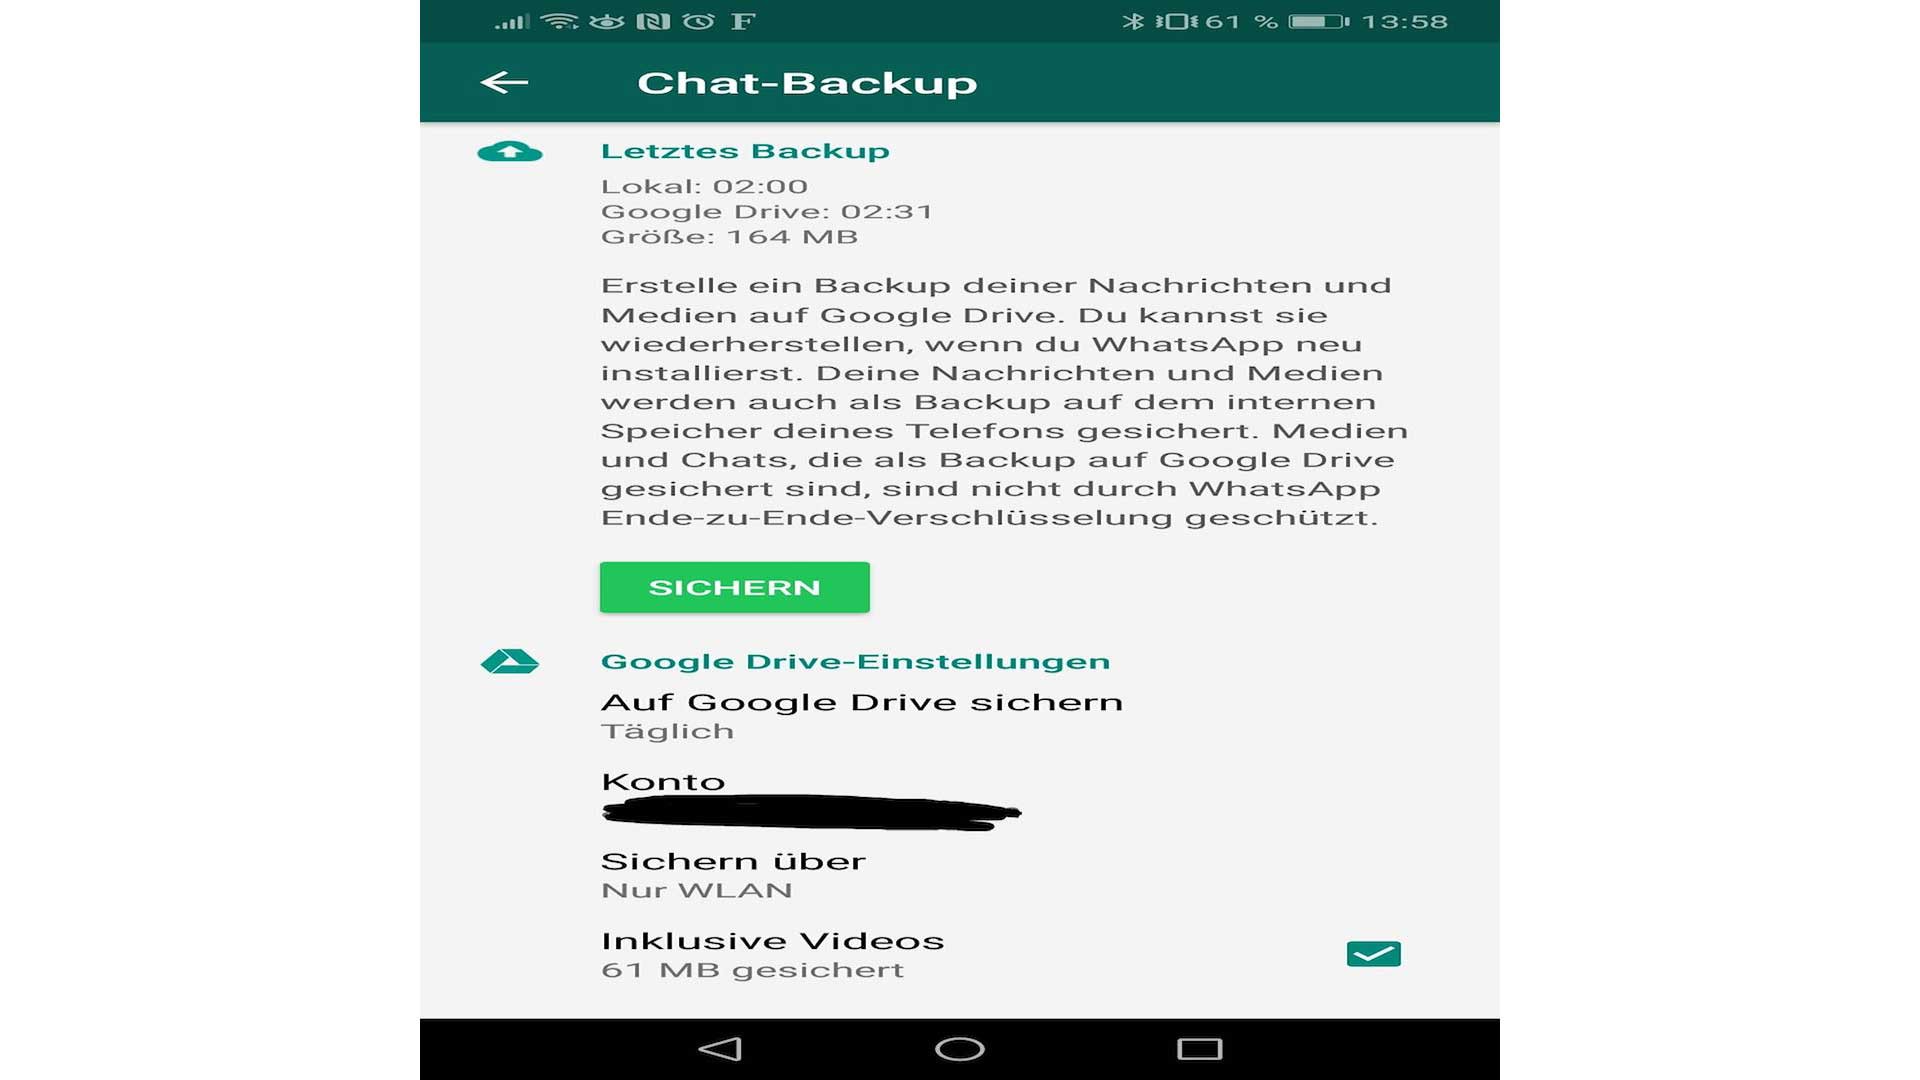 whatsapp wiederherstellen iphone - www.cazamar.com.